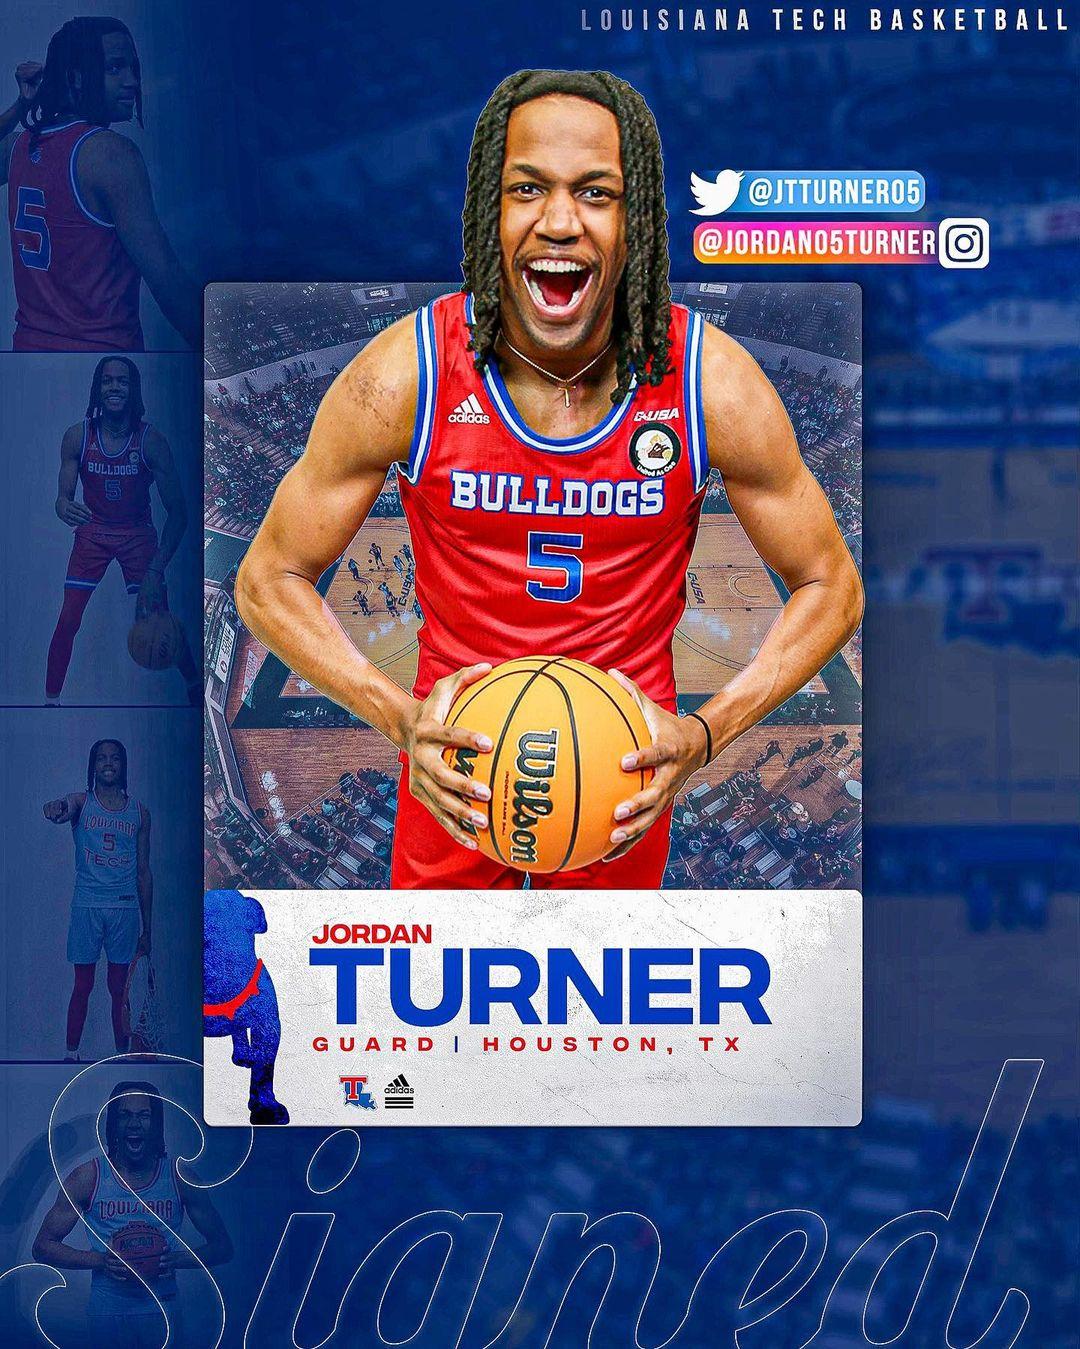 Jordan Turner Instagram Post Influencer Campaign